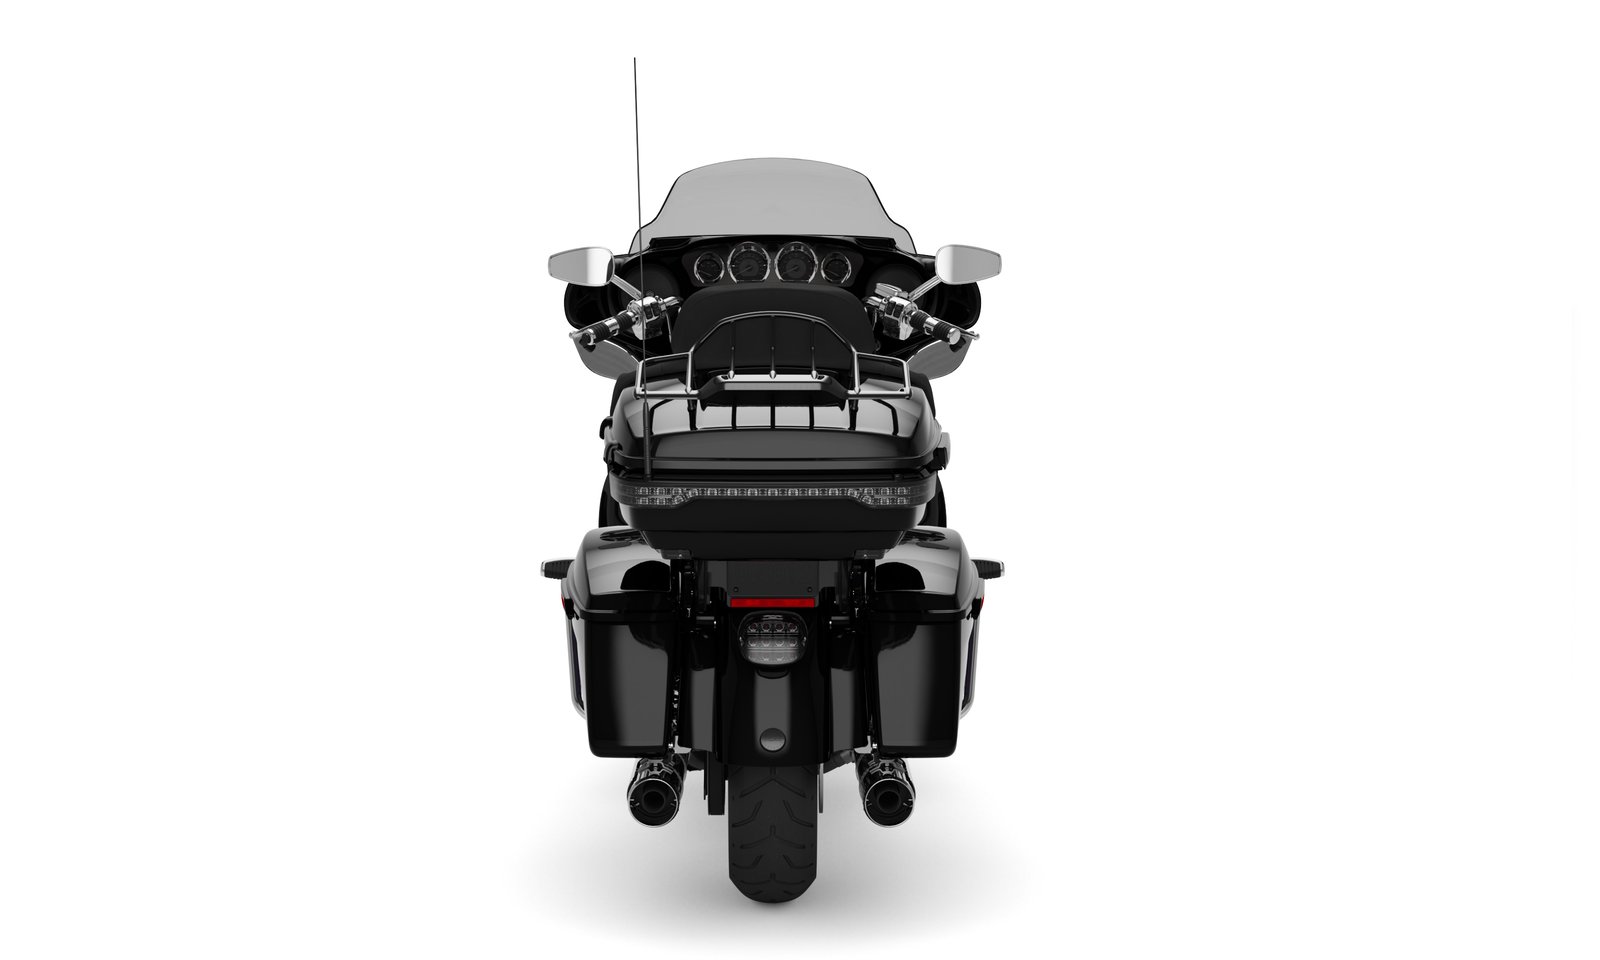 2021 Cvo Limited Harley Davidson Schweiz